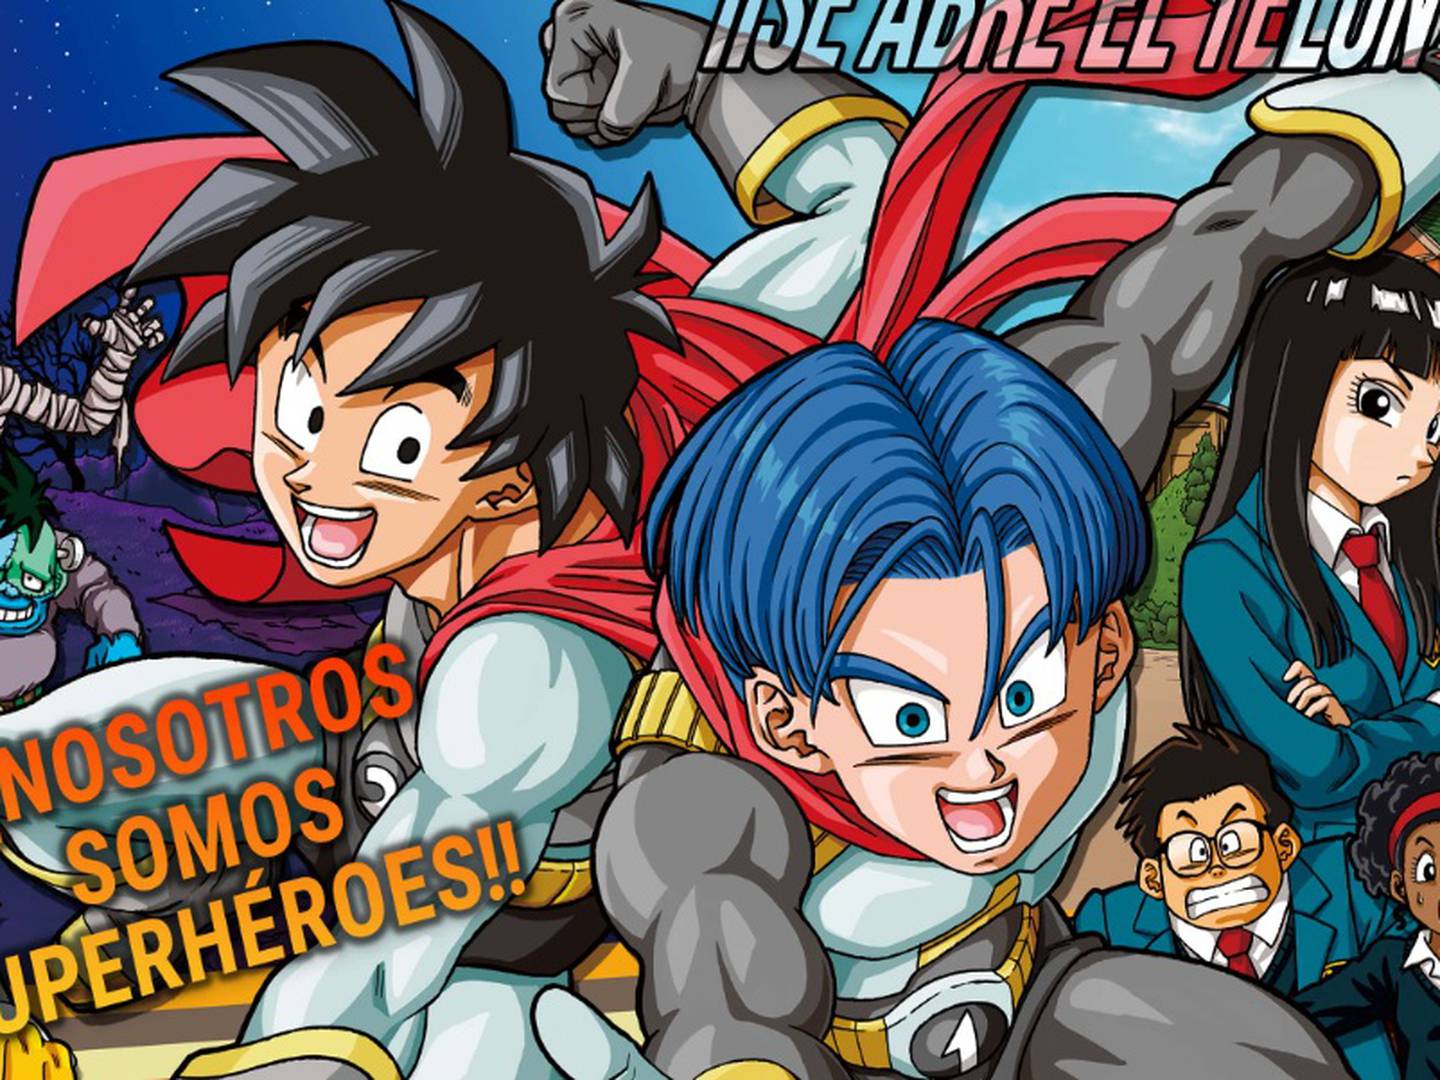 Dragon Ball Super”: así podrás leer el capítulo 88 en español, Shueisha, nnda nnlt, ESPECTACULOS